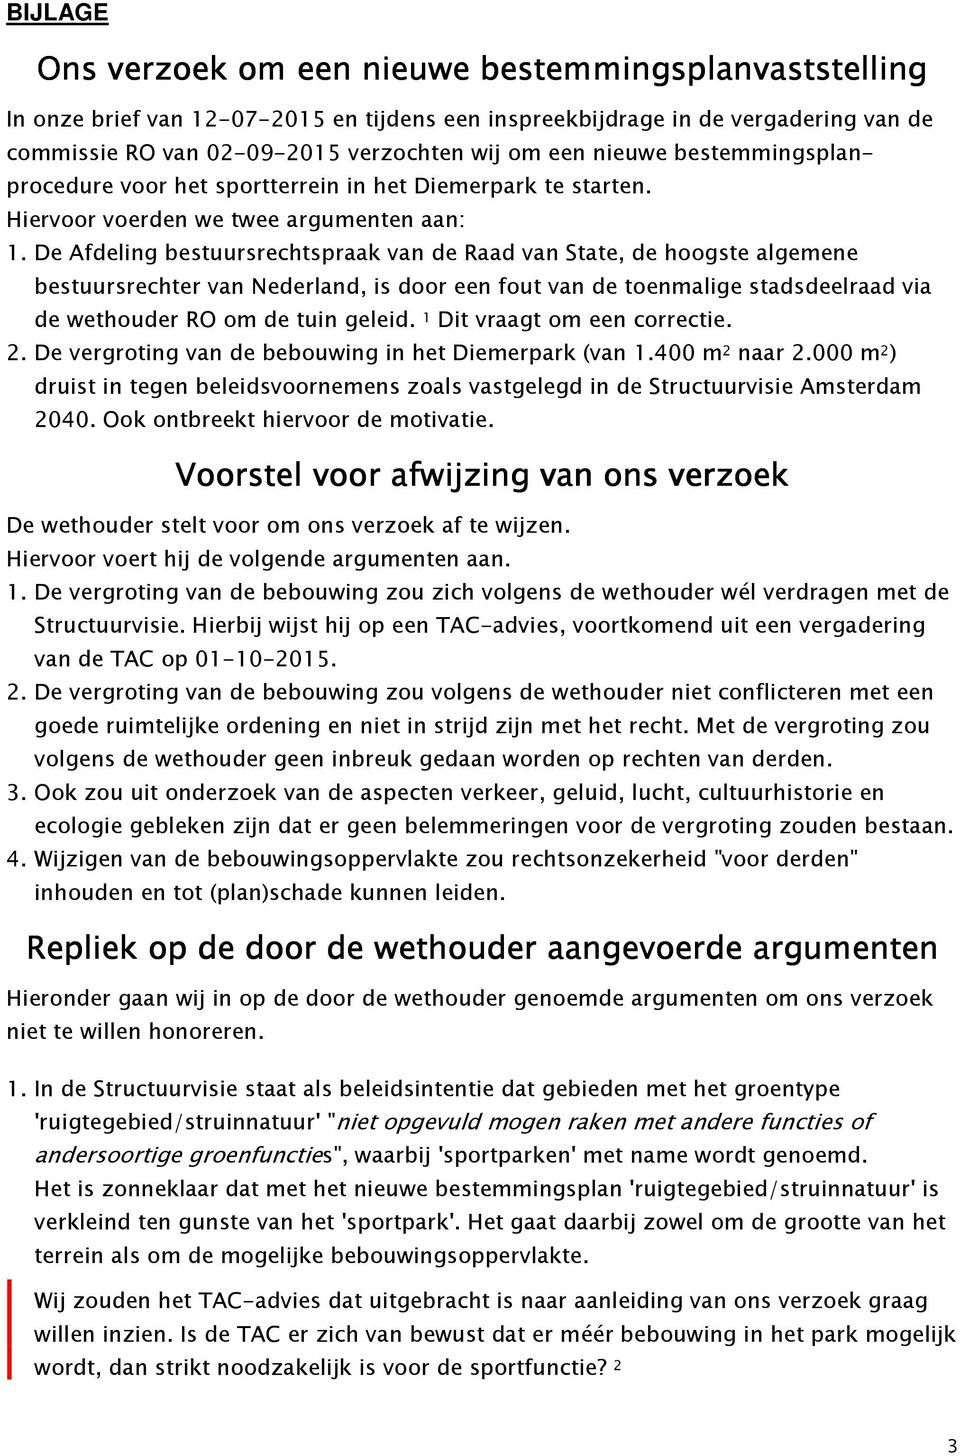 De Afdeling bestuursrechtspraak van de Raad van State, de hoogste algemene bestuursrechter van Nederland, is door een fout van de toenmalige stadsdeelraad via de wethouder RO om de tuin geleid.